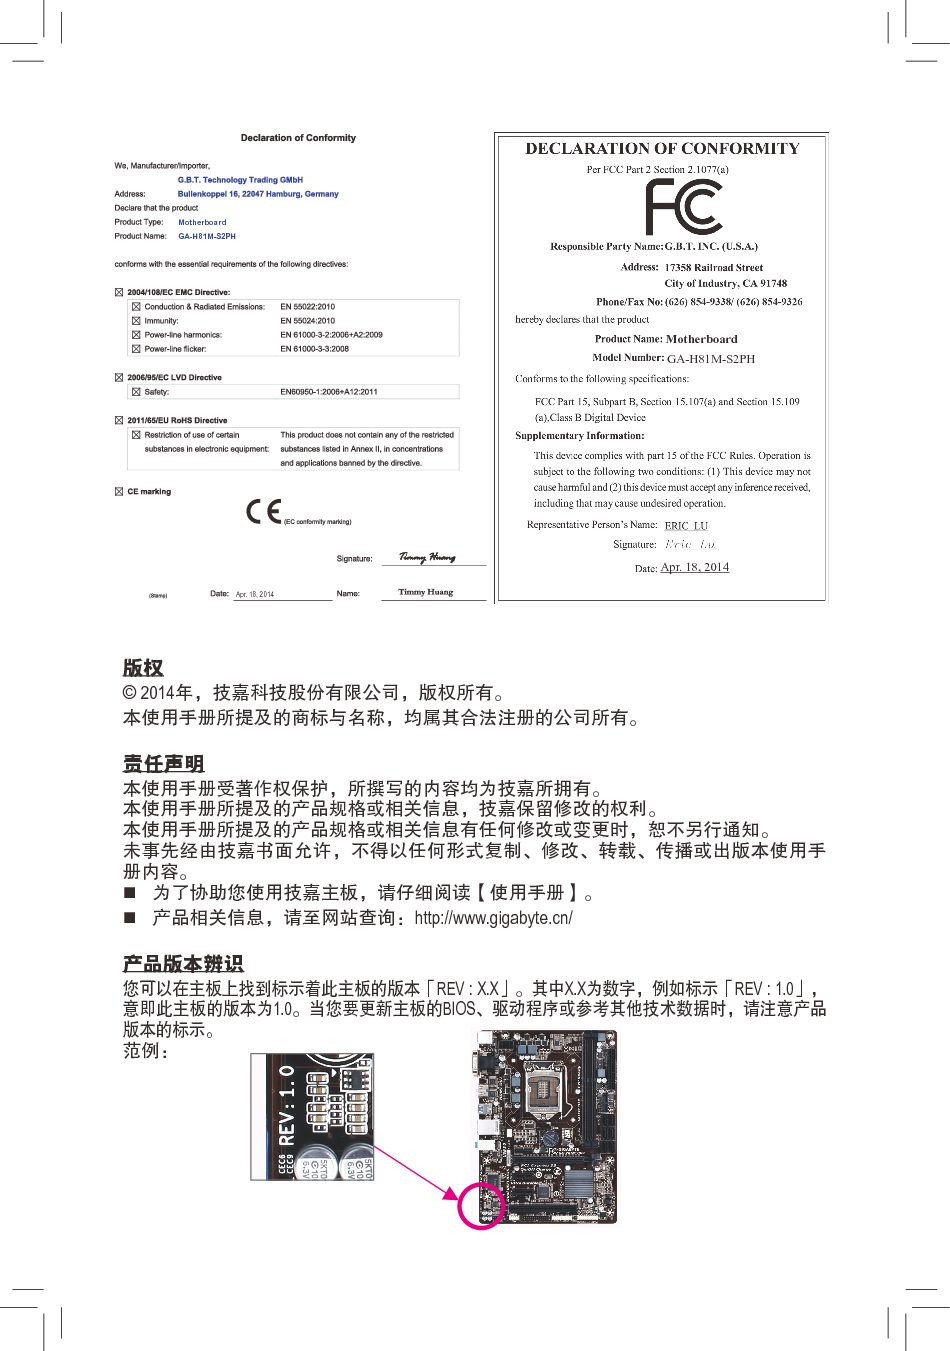 技嘉 Gigabyte GA-H81M-S2PH 2001版 使用手册 第1页